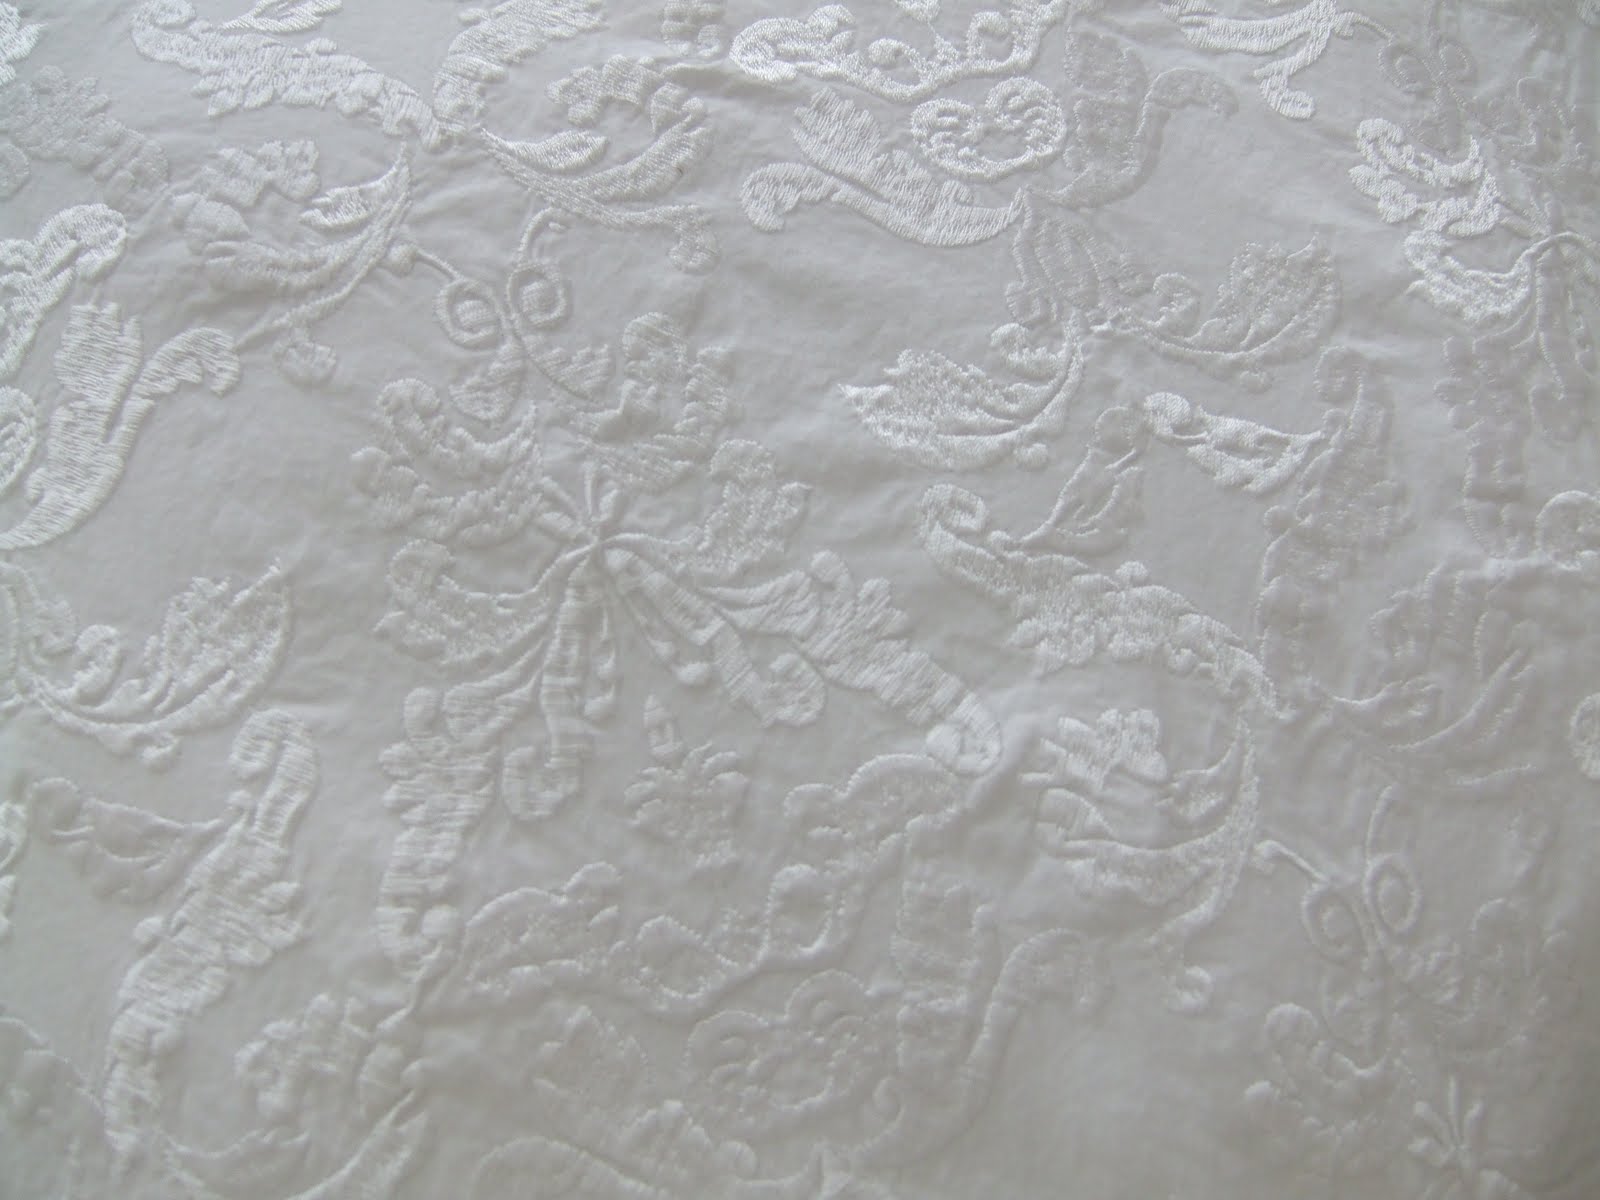 Chinese Pouches- 2 Color- w/Embroidery Fabric- Price Per Dozen